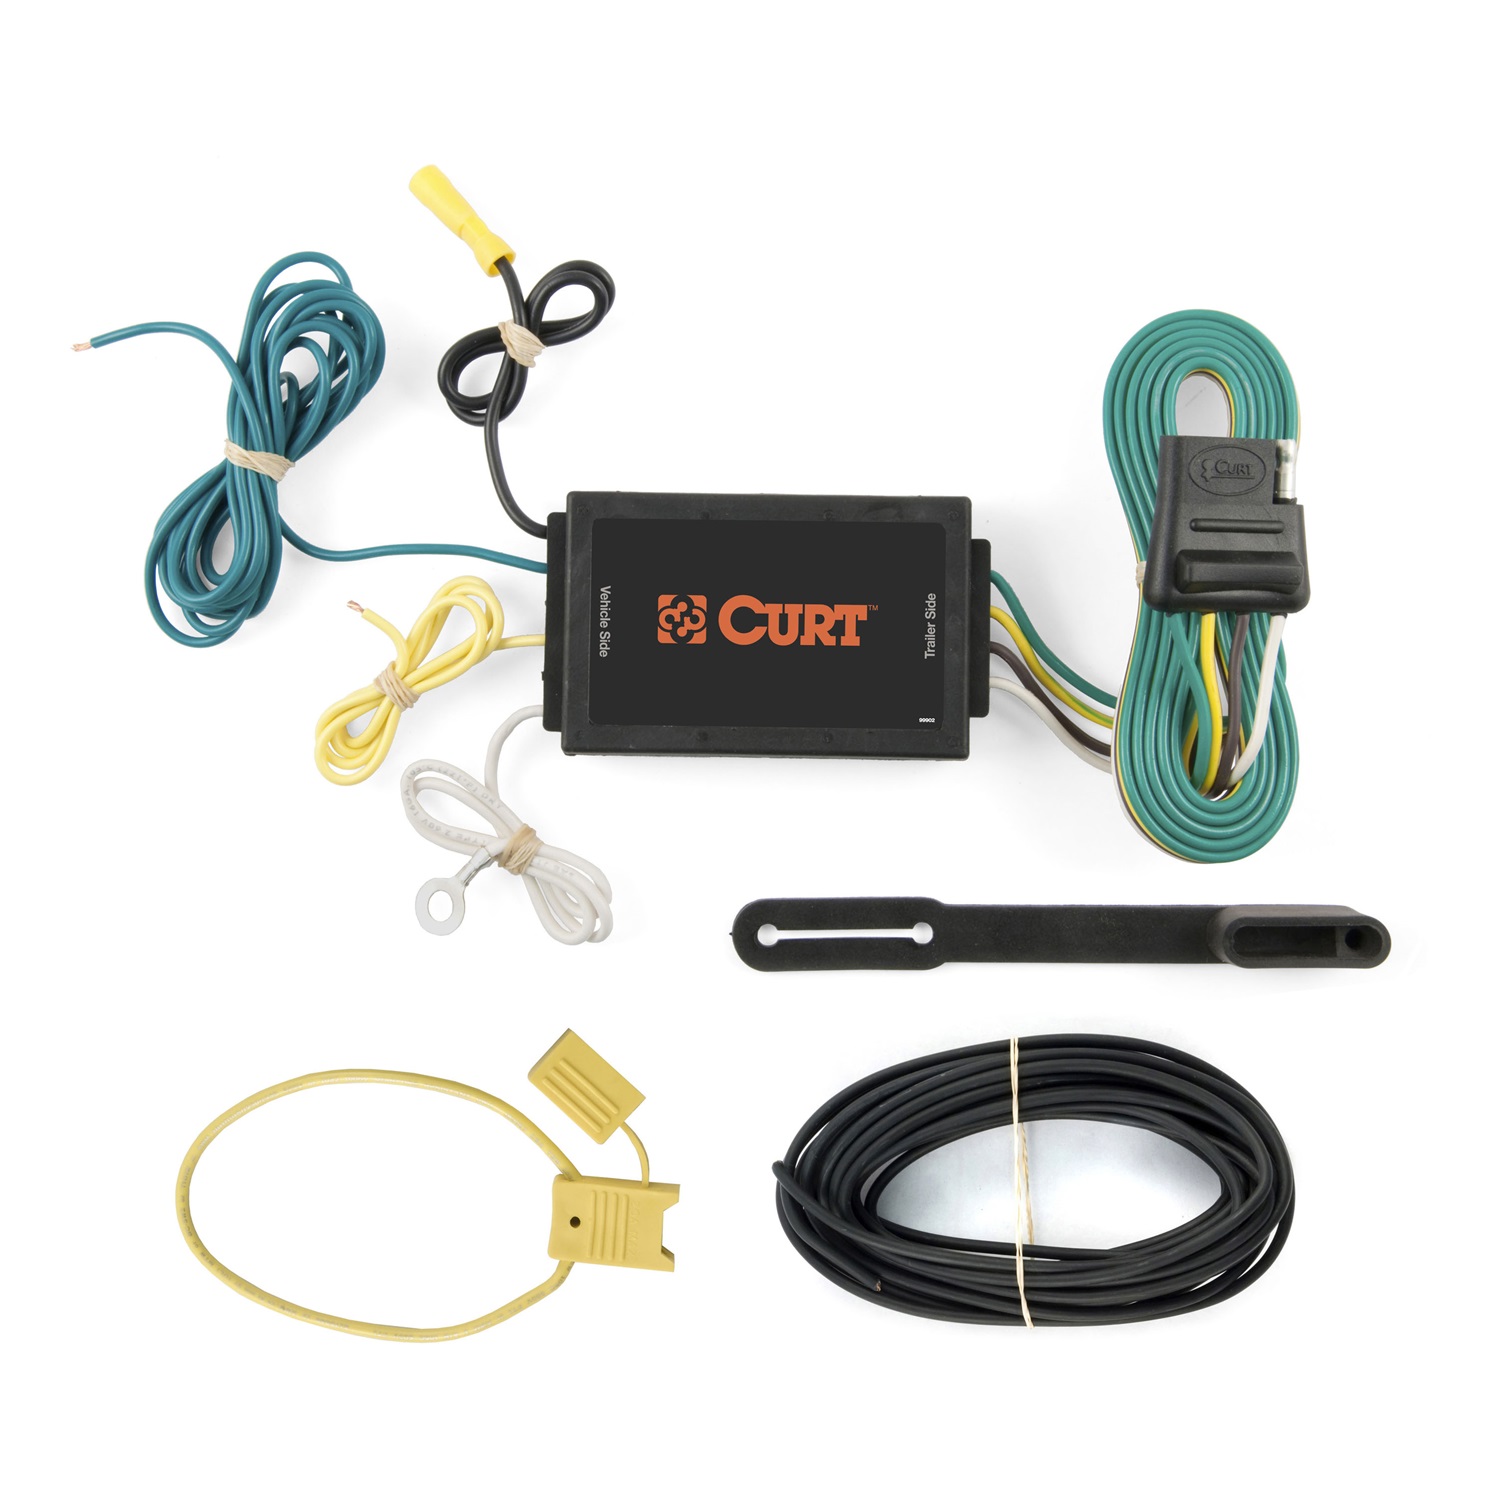 CURT Manufacturing CURT Manufacturing 59201 Wiring Kit